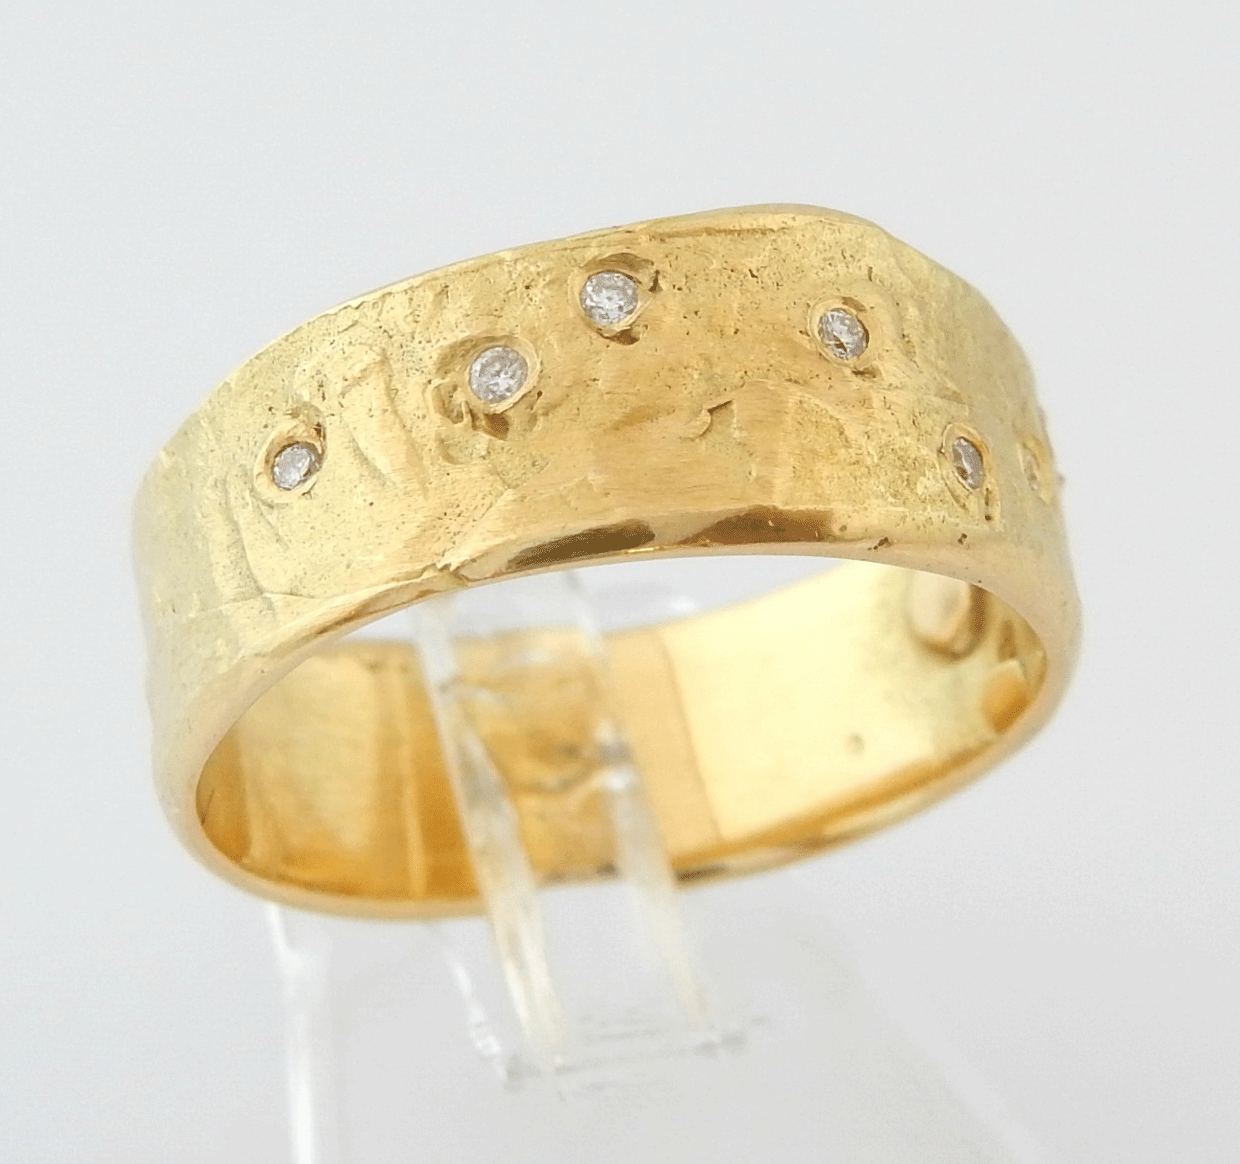 Brede 14 Karaat Gouden Ring met 9 - Juwelenwereld